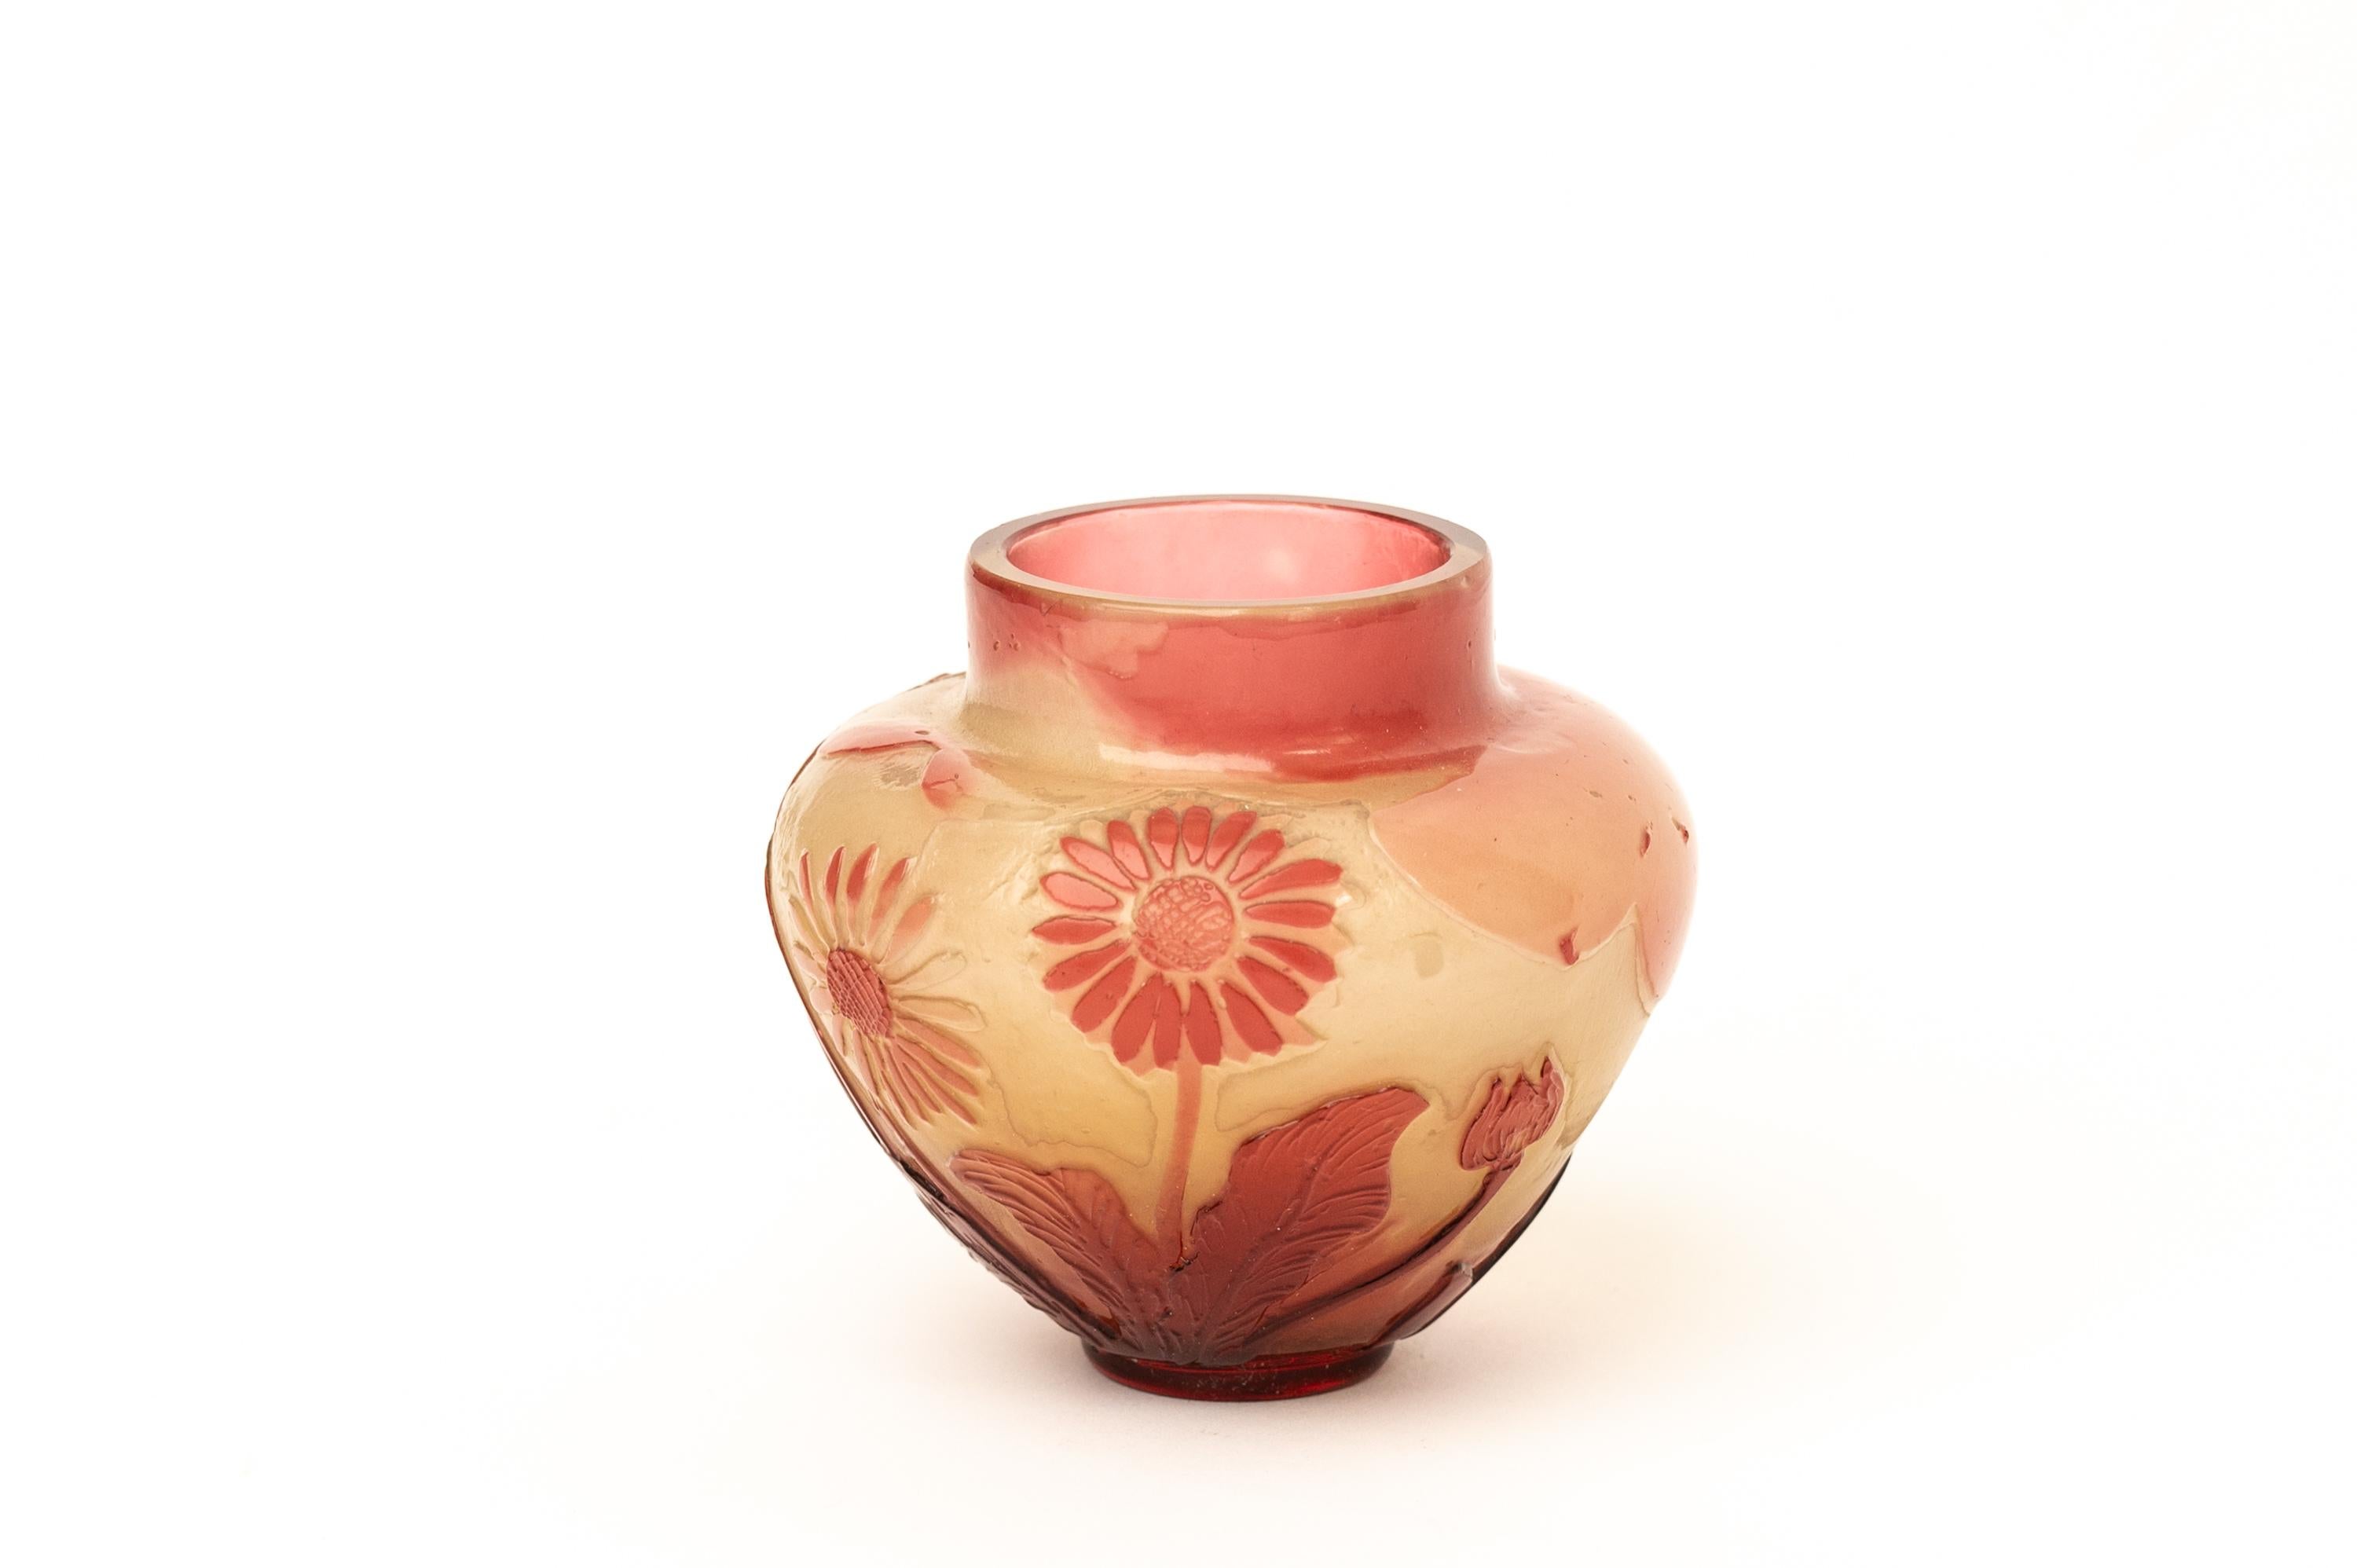 Diese Vase ist ein Meisterwerk der Glasmacherkunst des Jugendstils. Es wurde von Emile Gallé entworfen, einem französischen Künstler und Designer, der für seinen innovativen Einsatz von Farbe und Technik in der Glaskunst bekannt war.

Die Vase ist